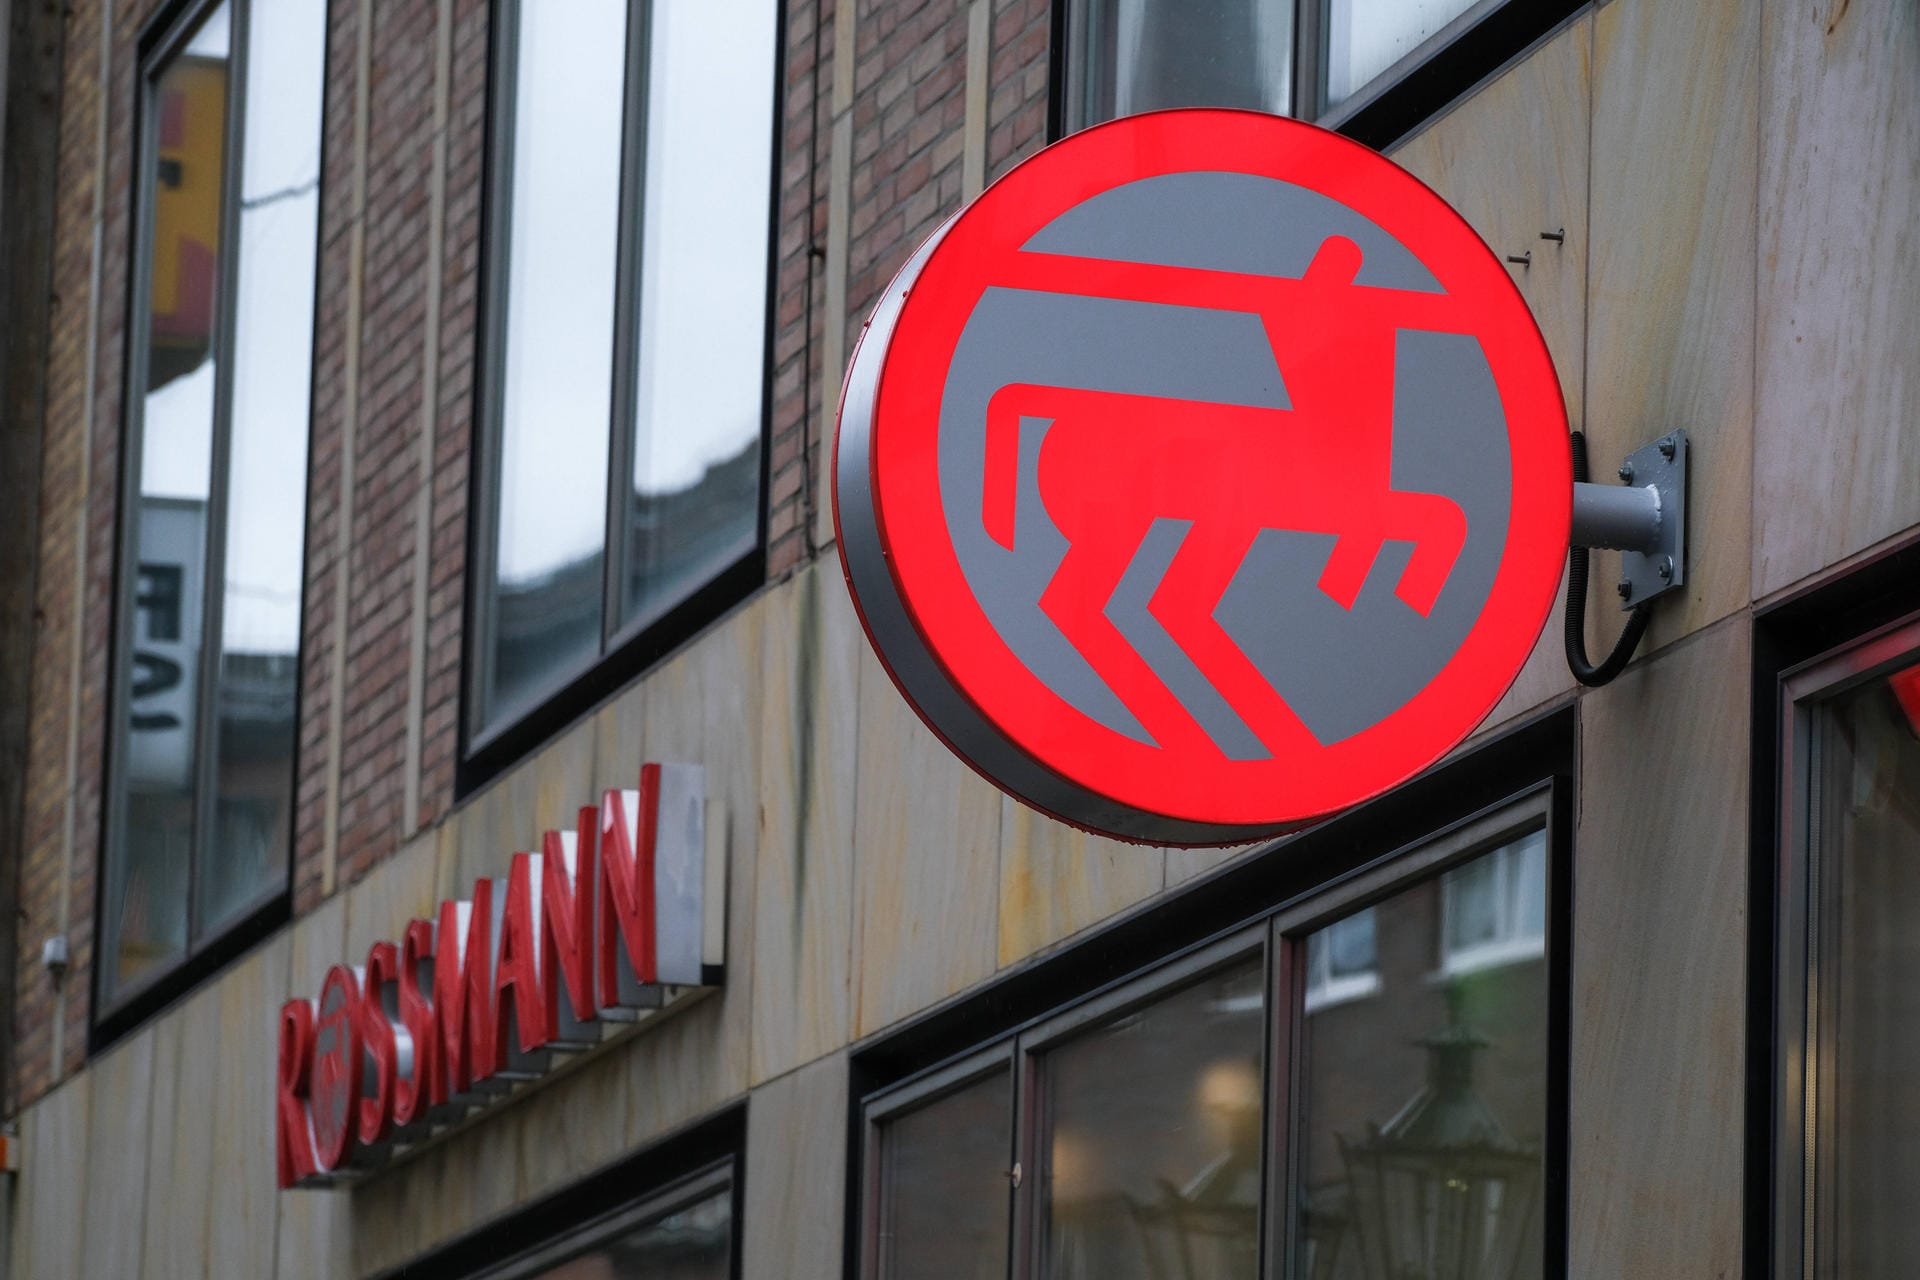 Mit der Drogeriekette Rossmann hat es auch ein Einzelhändler in die internationale Liste der Top 50 Arbeitgeber geschafft. Das niedersächsische Unternehmen ist noch immer in Familienhand und stellt etwa 33.400 Mitarbeiter an.